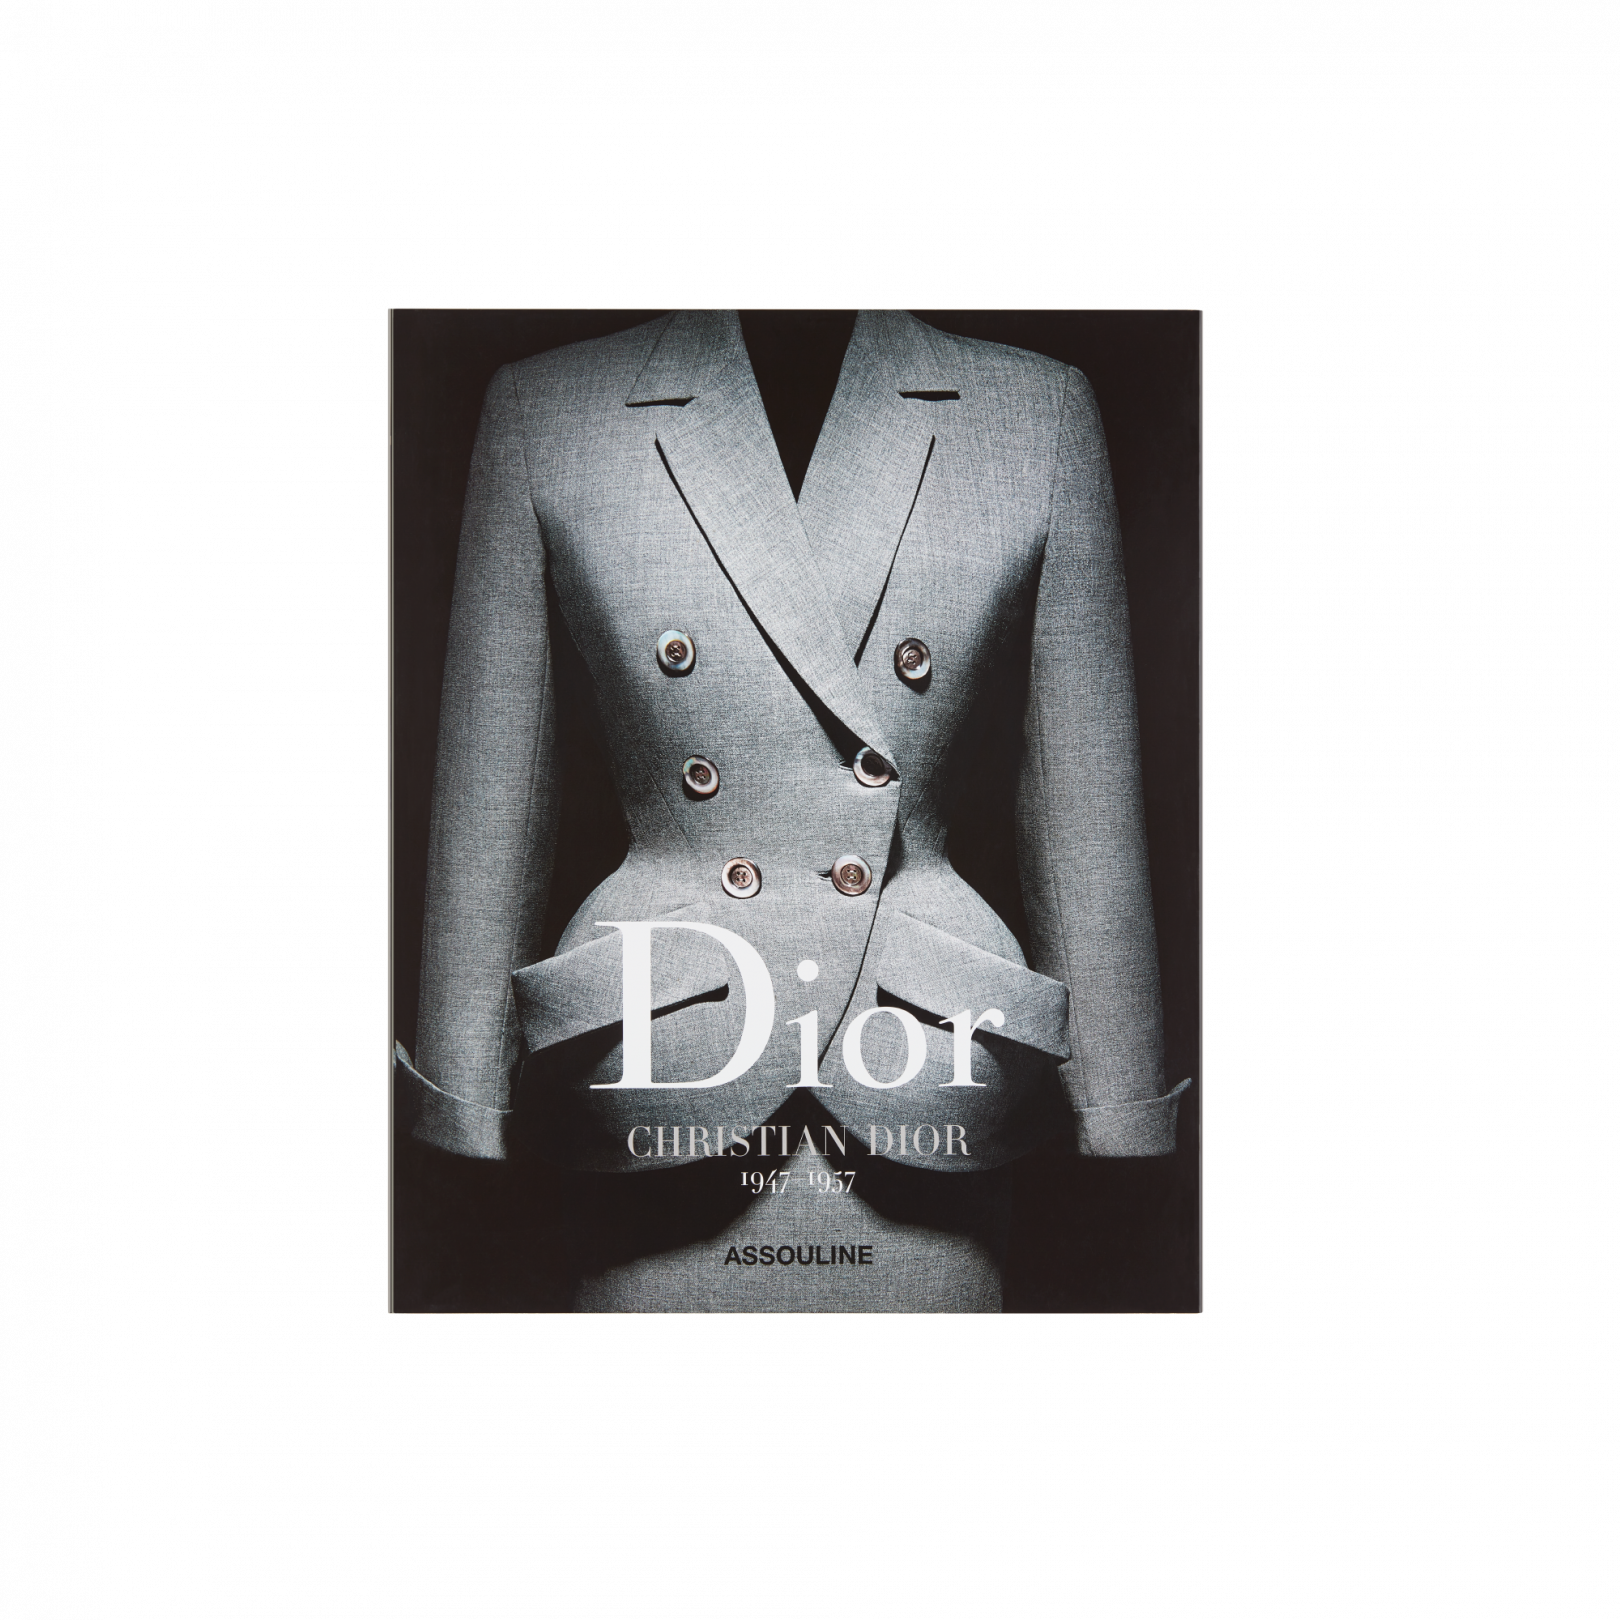 Seçkide ünlü Dior vârisleri Gianfranco Ferré, Yves Saint Laurent, Marc Bohan ve Christian Dior'un antolojileri de yer alıyor.